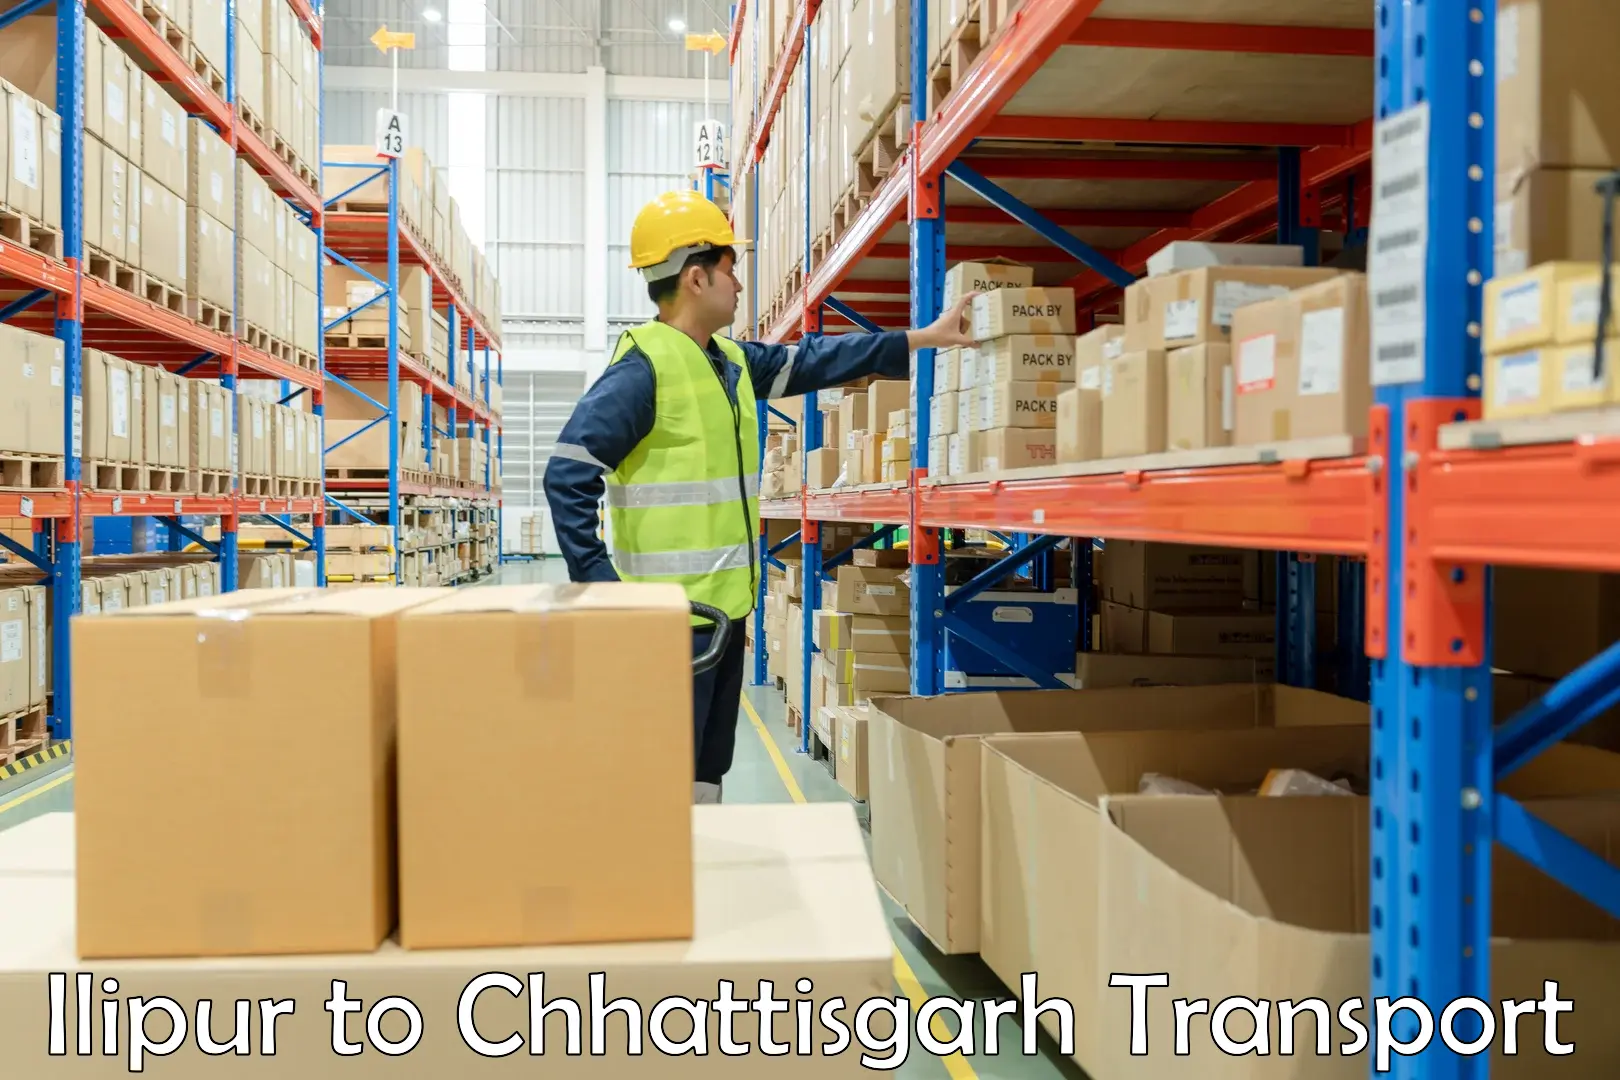 Container transport service Ilipur to Patna Chhattisgarh